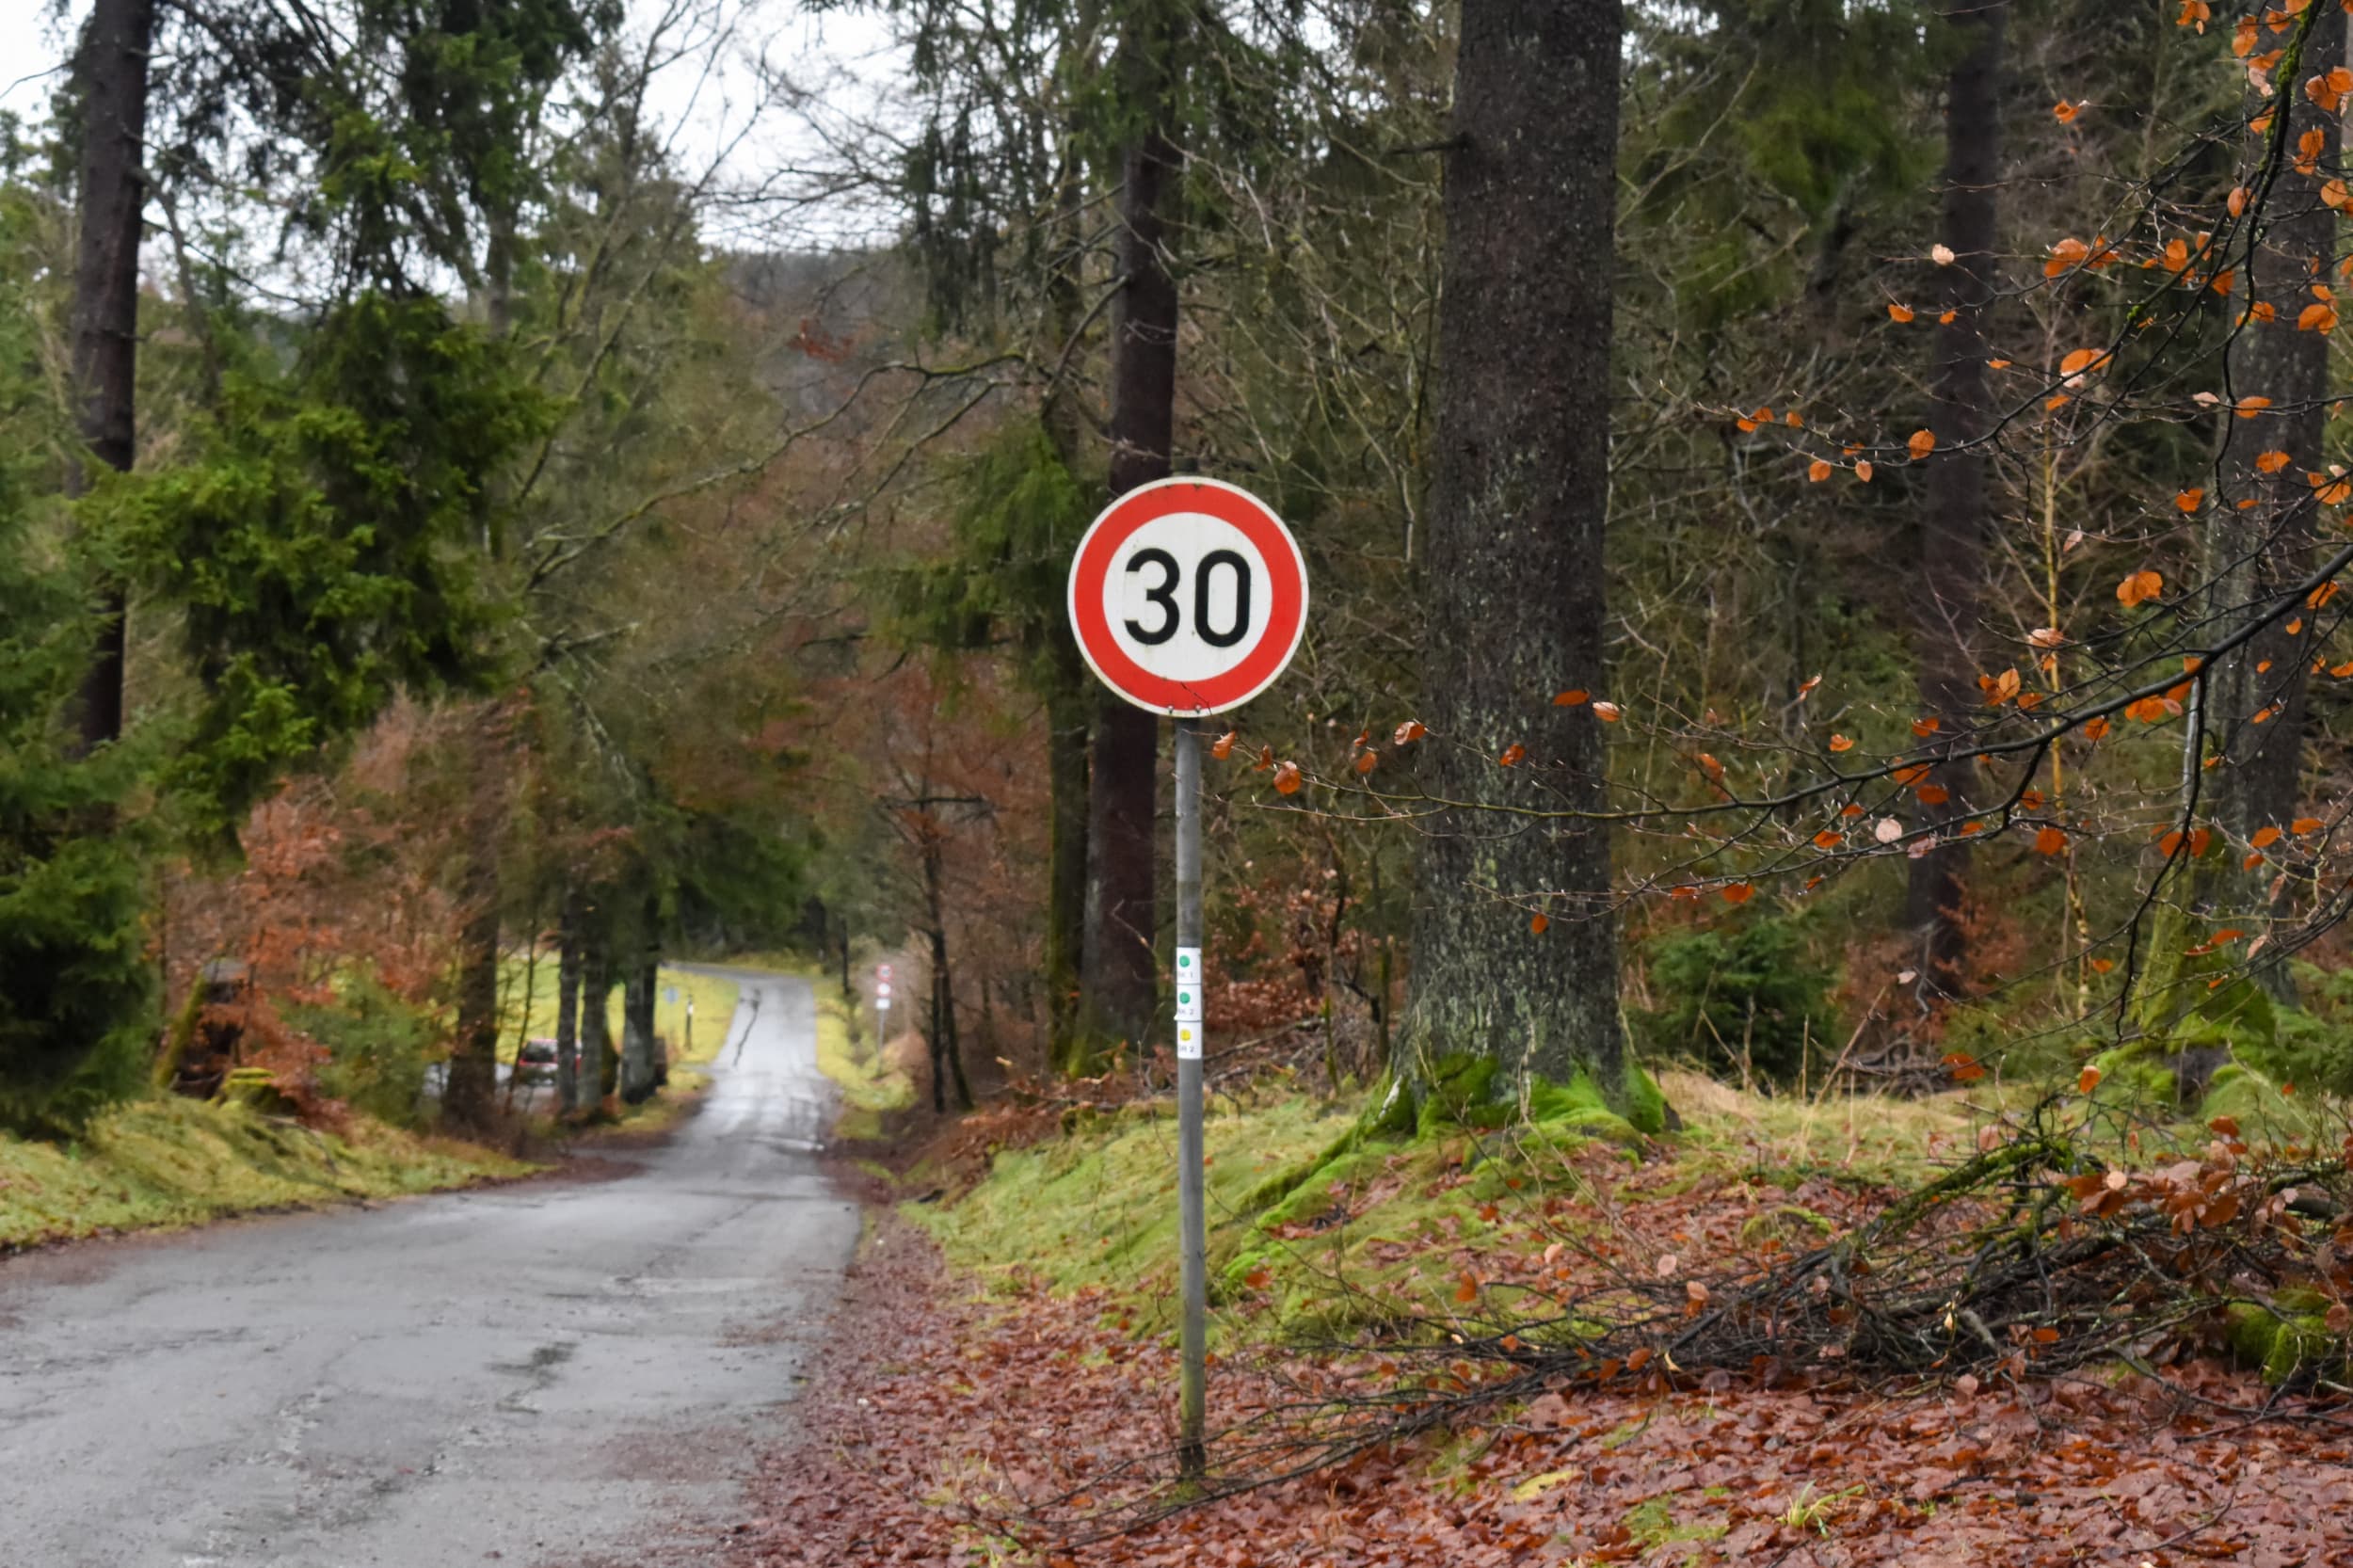 Road sign 30 km reminder